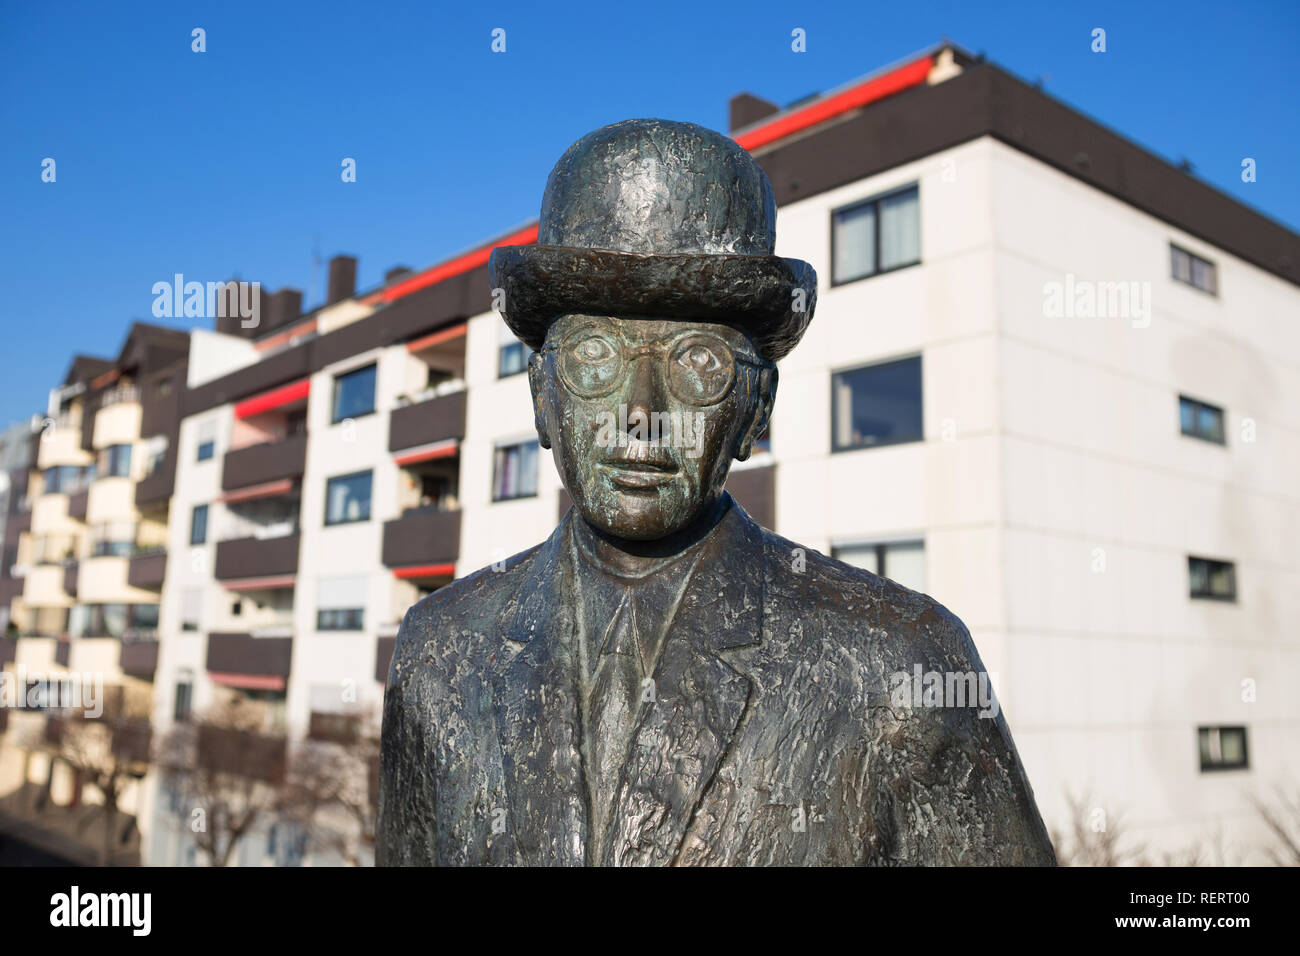 Statua in neuwied città storica vicino al fiume Reno in Renania Palatinato Germania Foto Stock